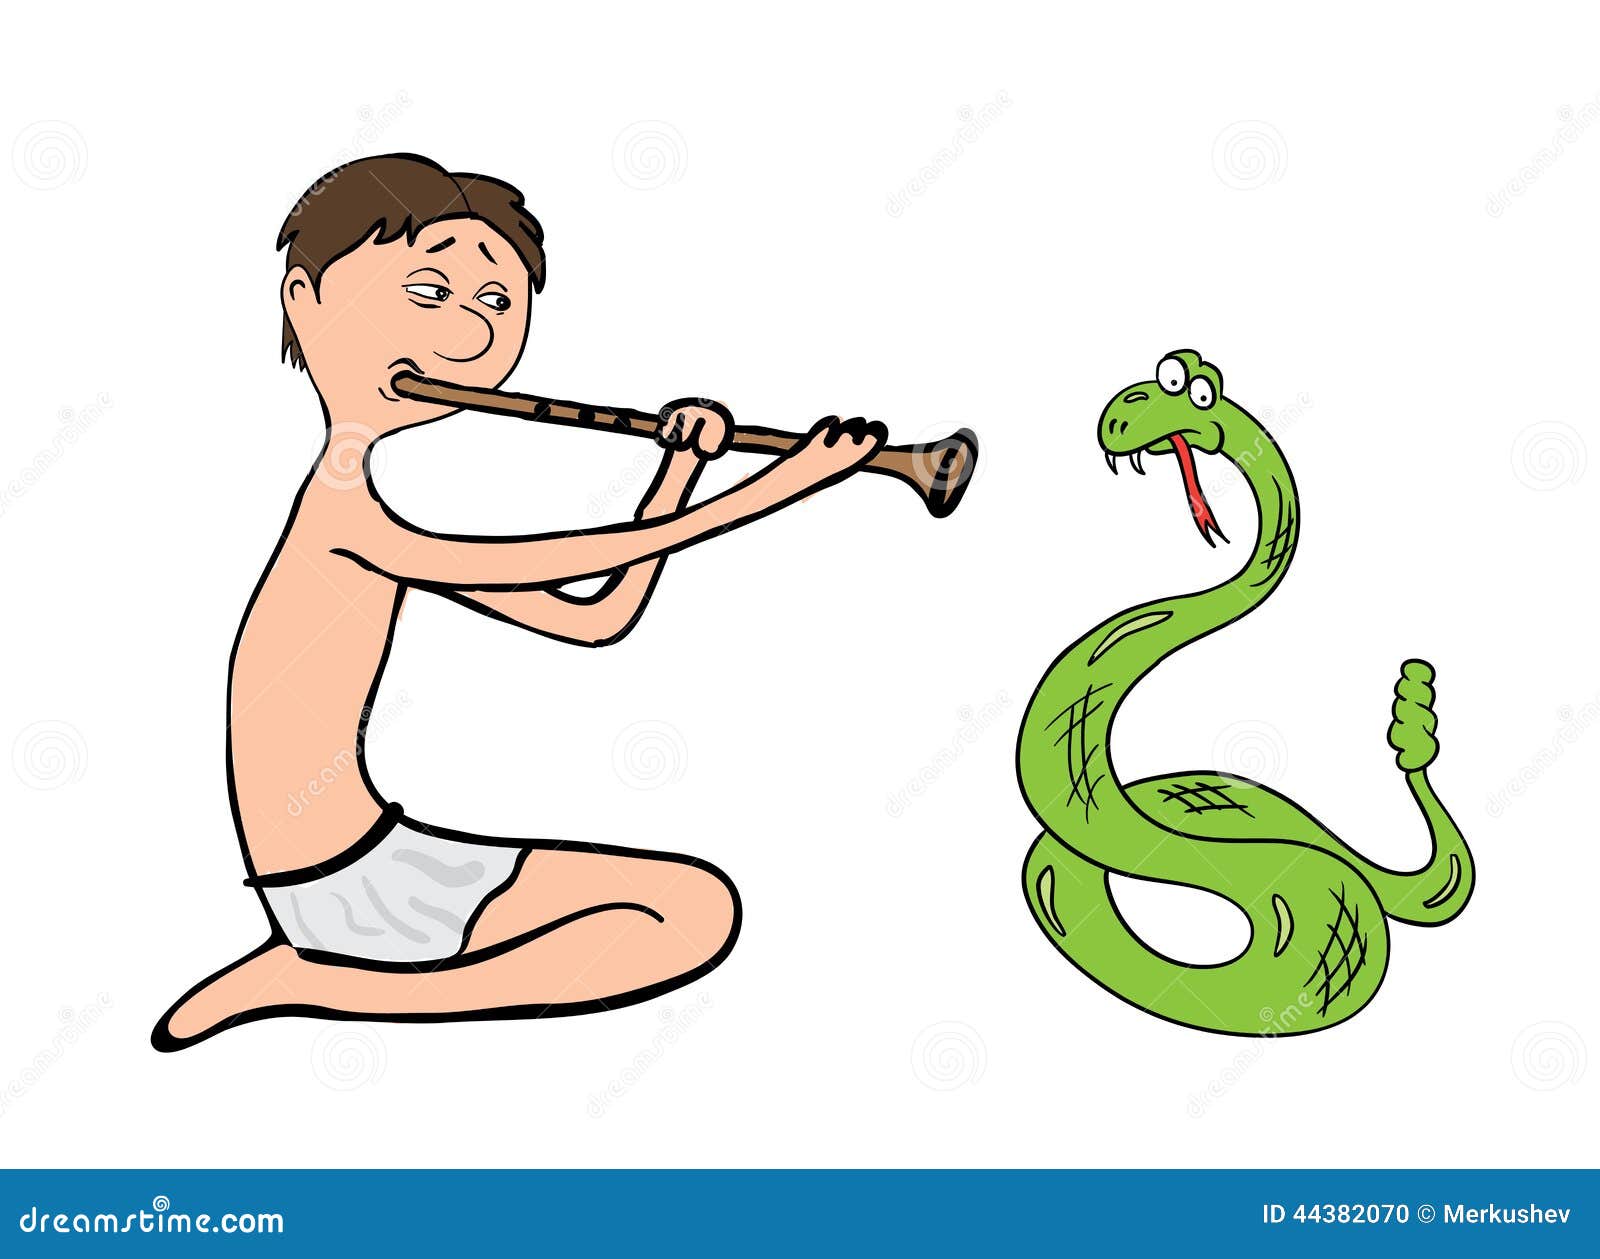 snake charmer, fakir  